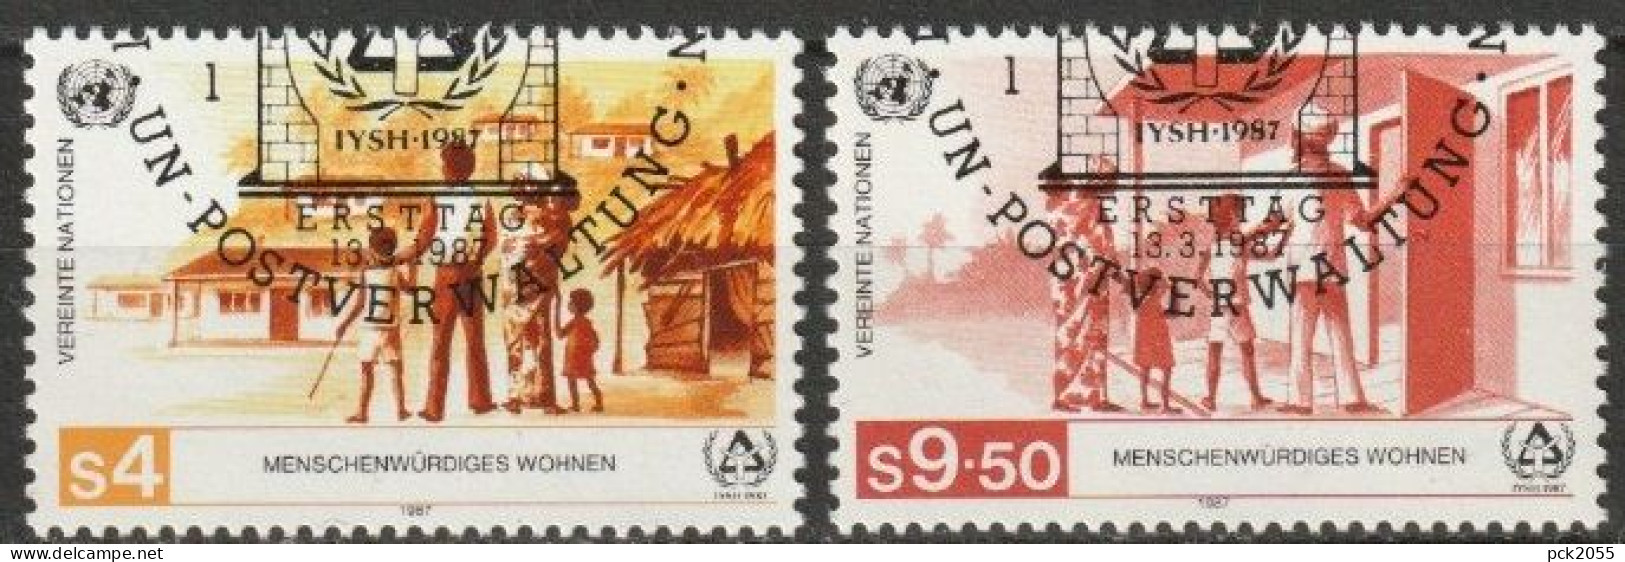 UNO Wien 1987 MiNr.69 - 70  O Gest. Intern. Jahr Für Menschenwürdiges Wohnen ( 2466) - Oblitérés